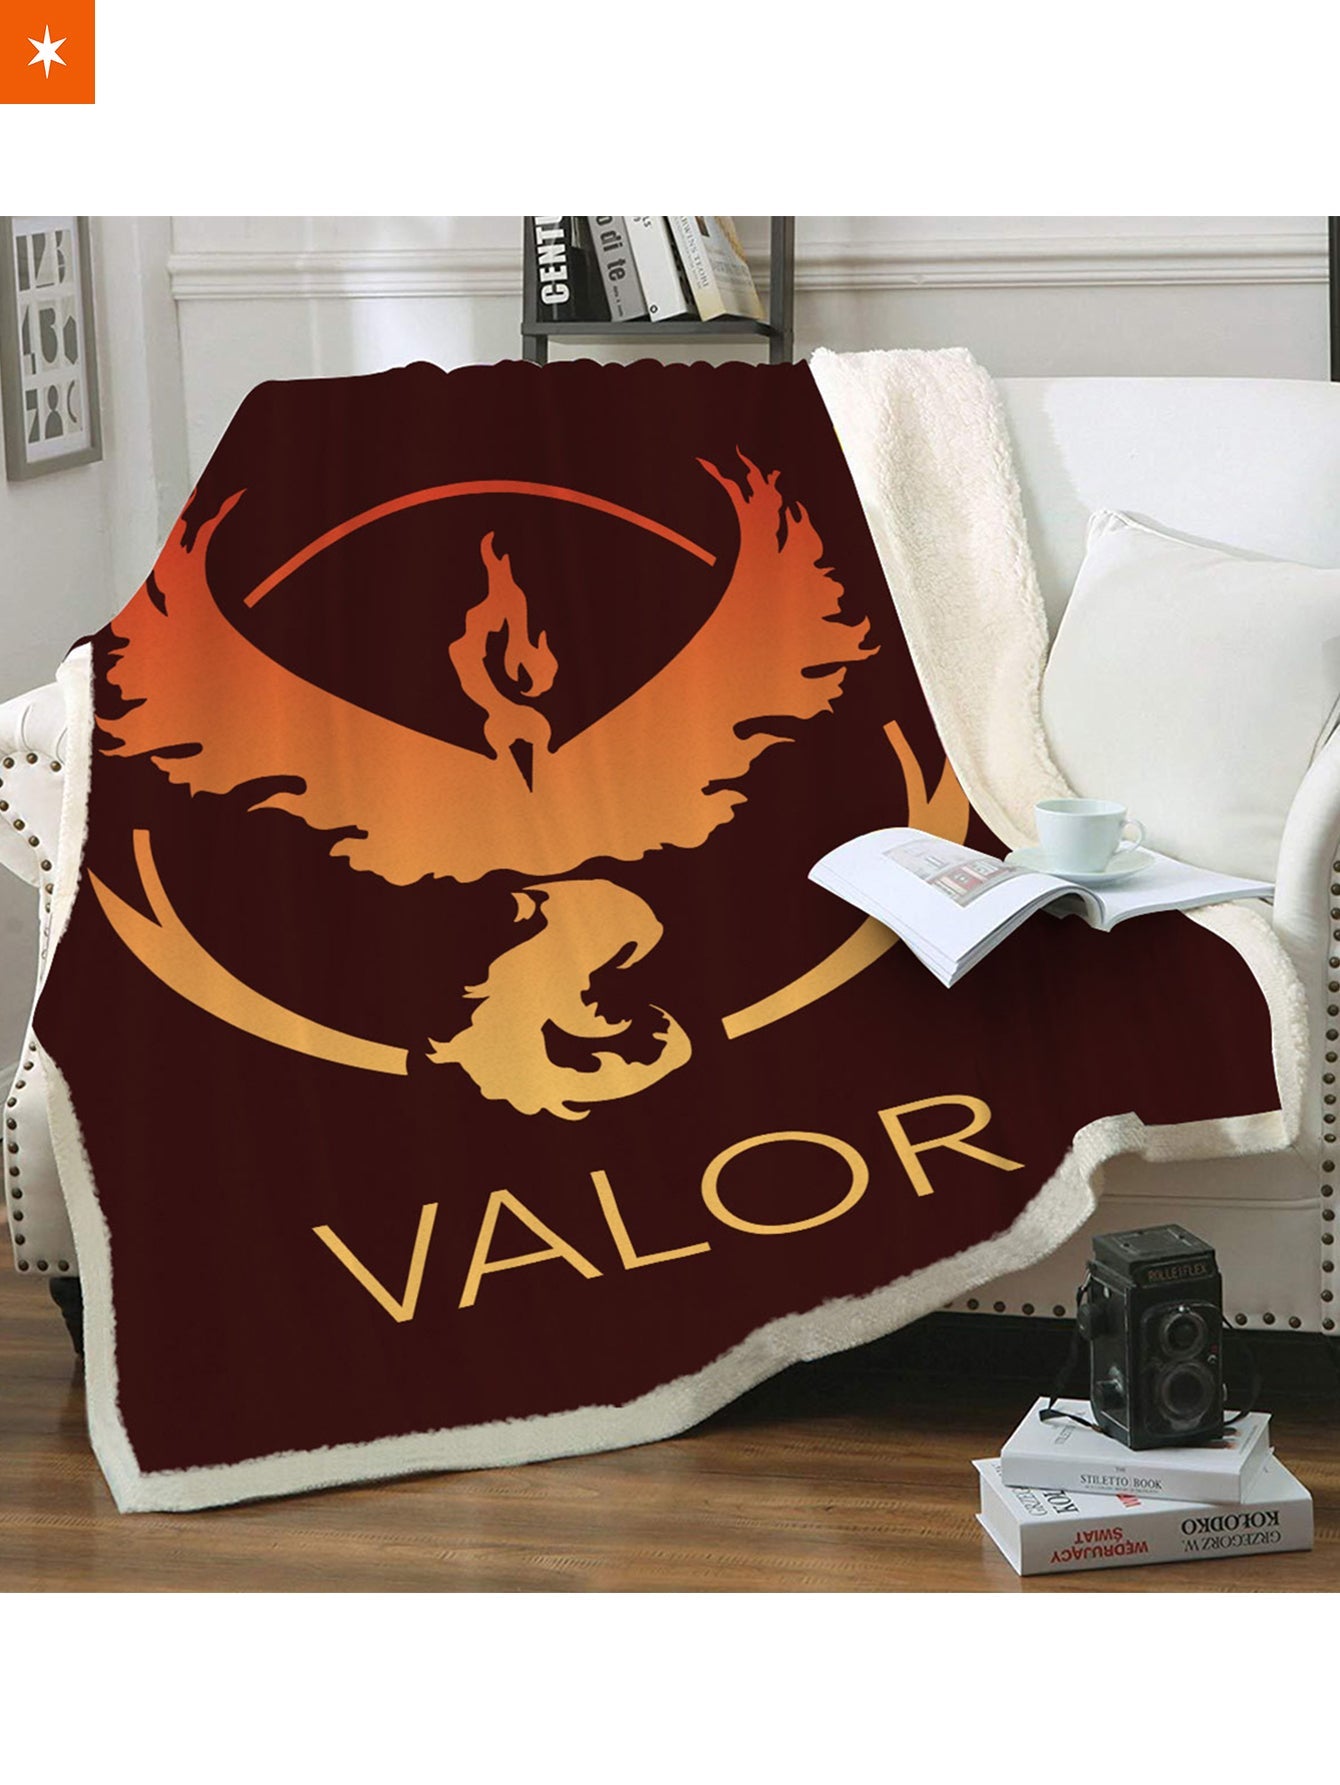 Fandomaniax - Team Valor Throw Blanket